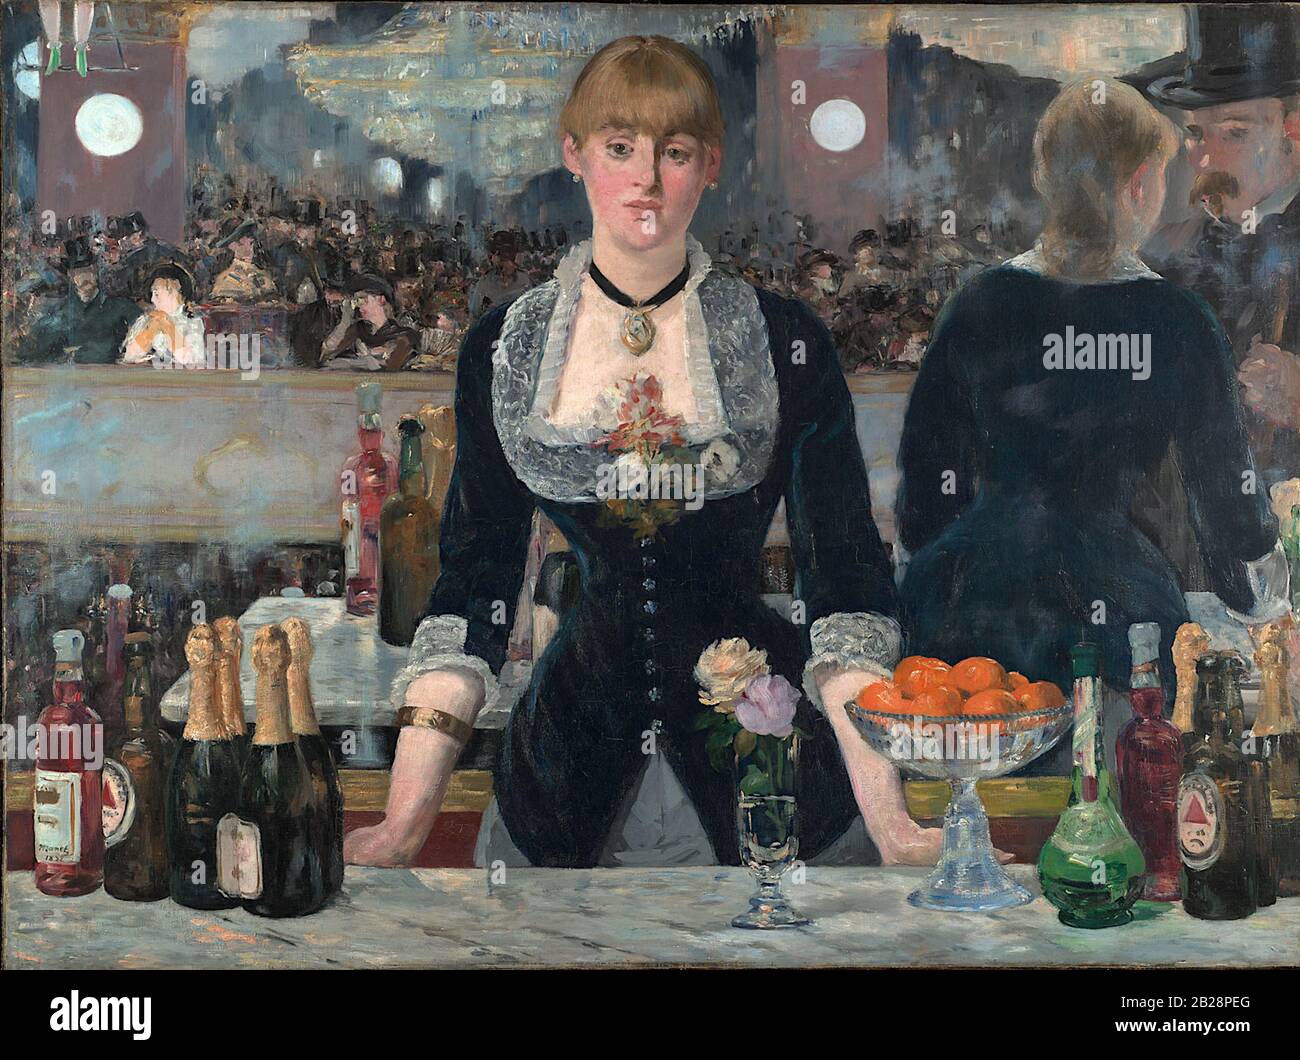 Un Bar al Folies-Bergère (1882) dipinto di Édouard Manet - Immagine Ad Altissima risoluzione e qualità Foto Stock